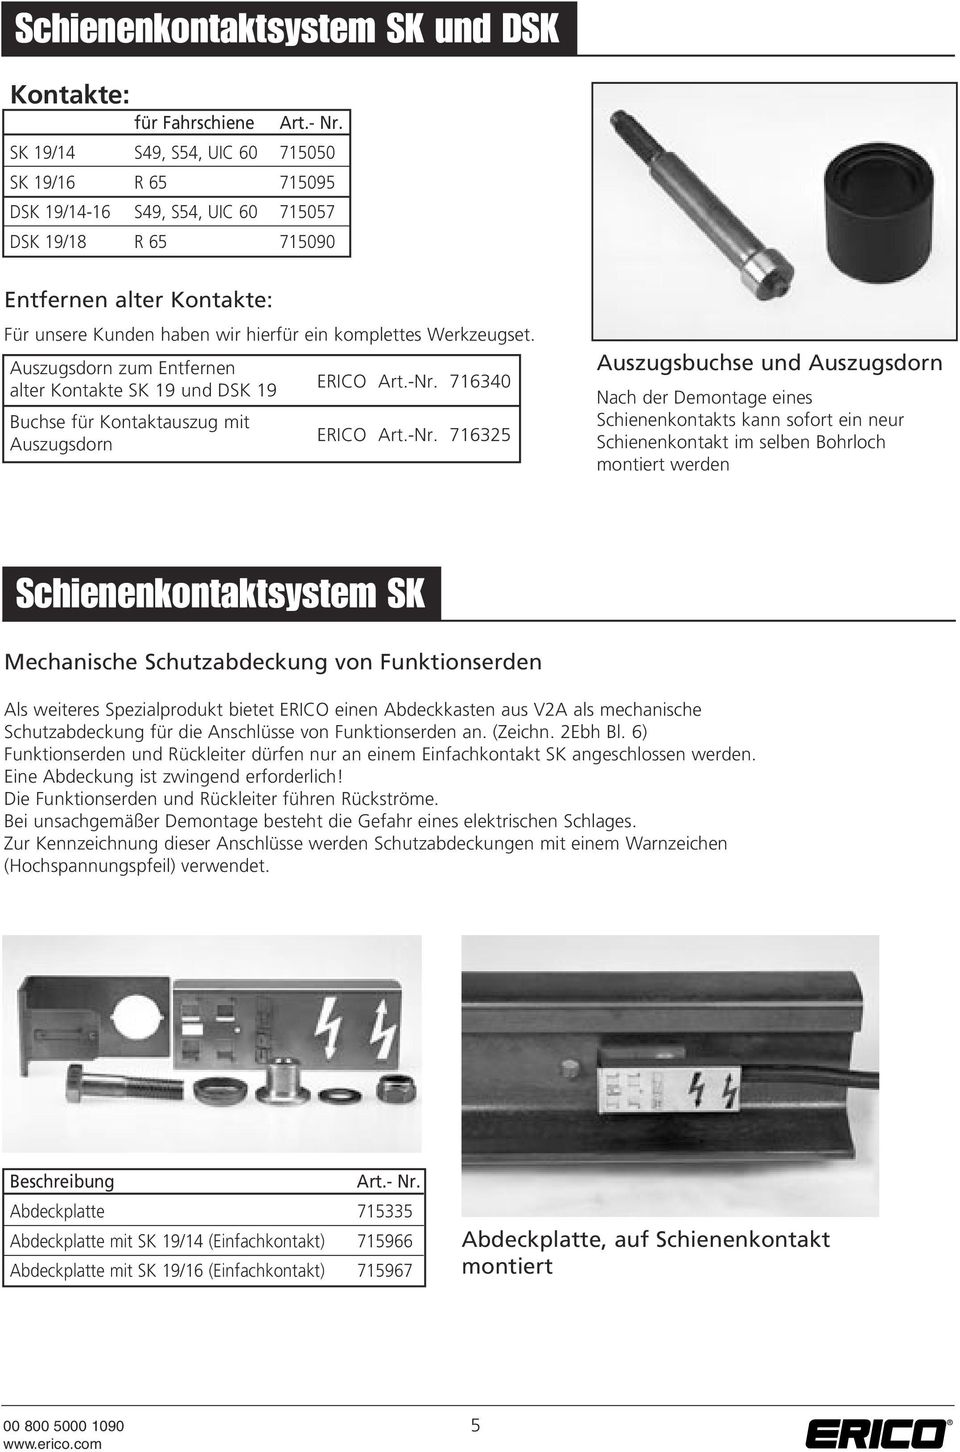 Ericontact Produkte Fur Eisenbahnen Pdf Kostenfreier Download